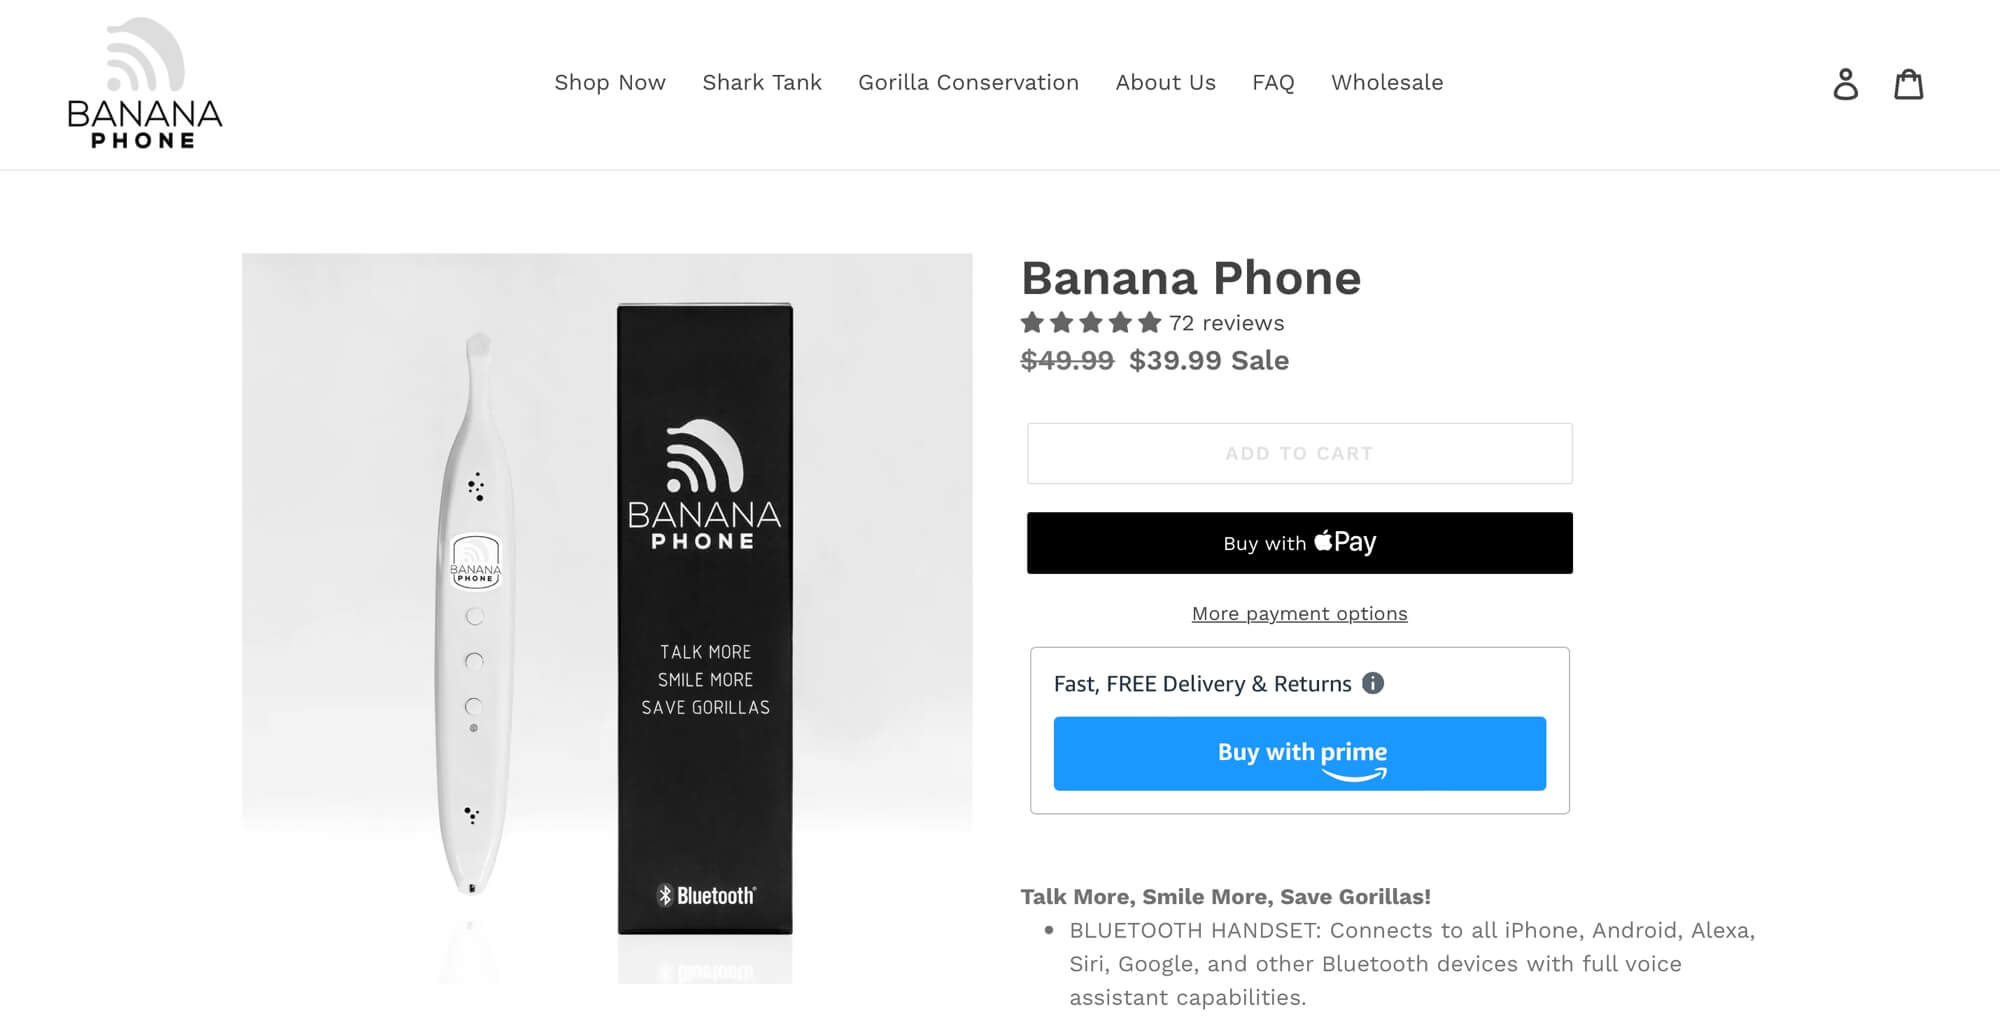 Amazon Buy With Prime - Banana Phone